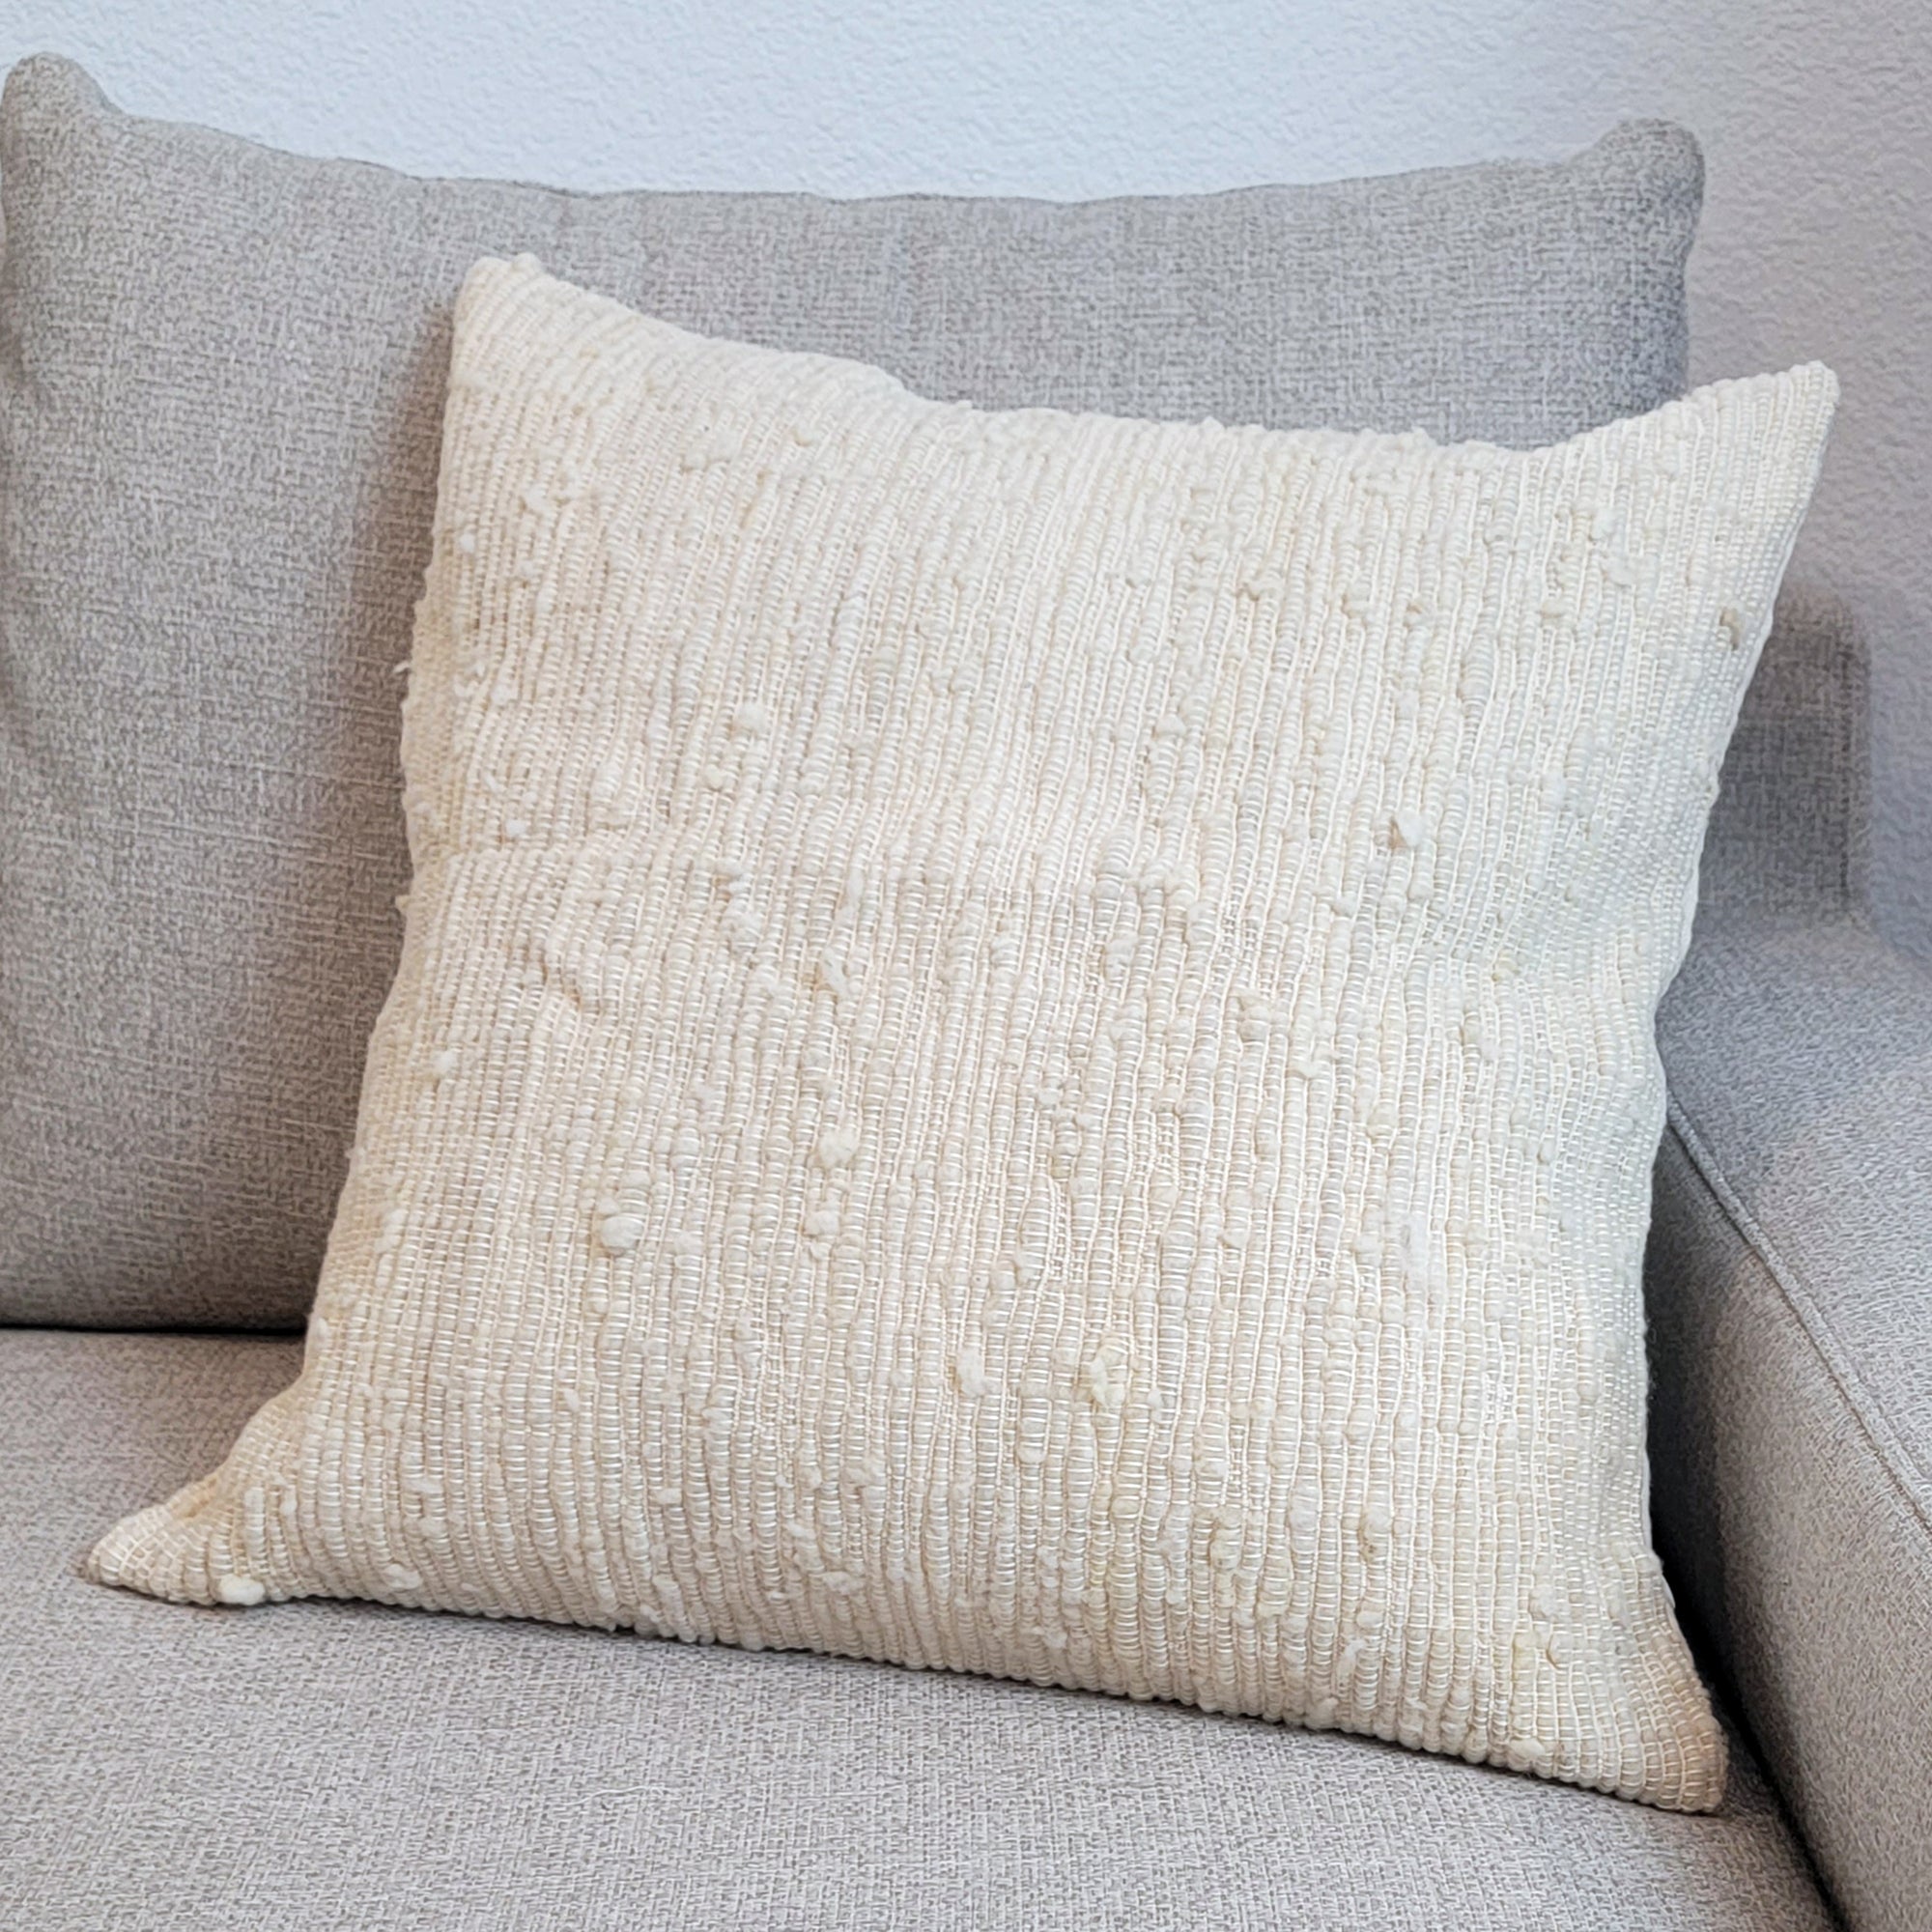 Woven Medellin pillows